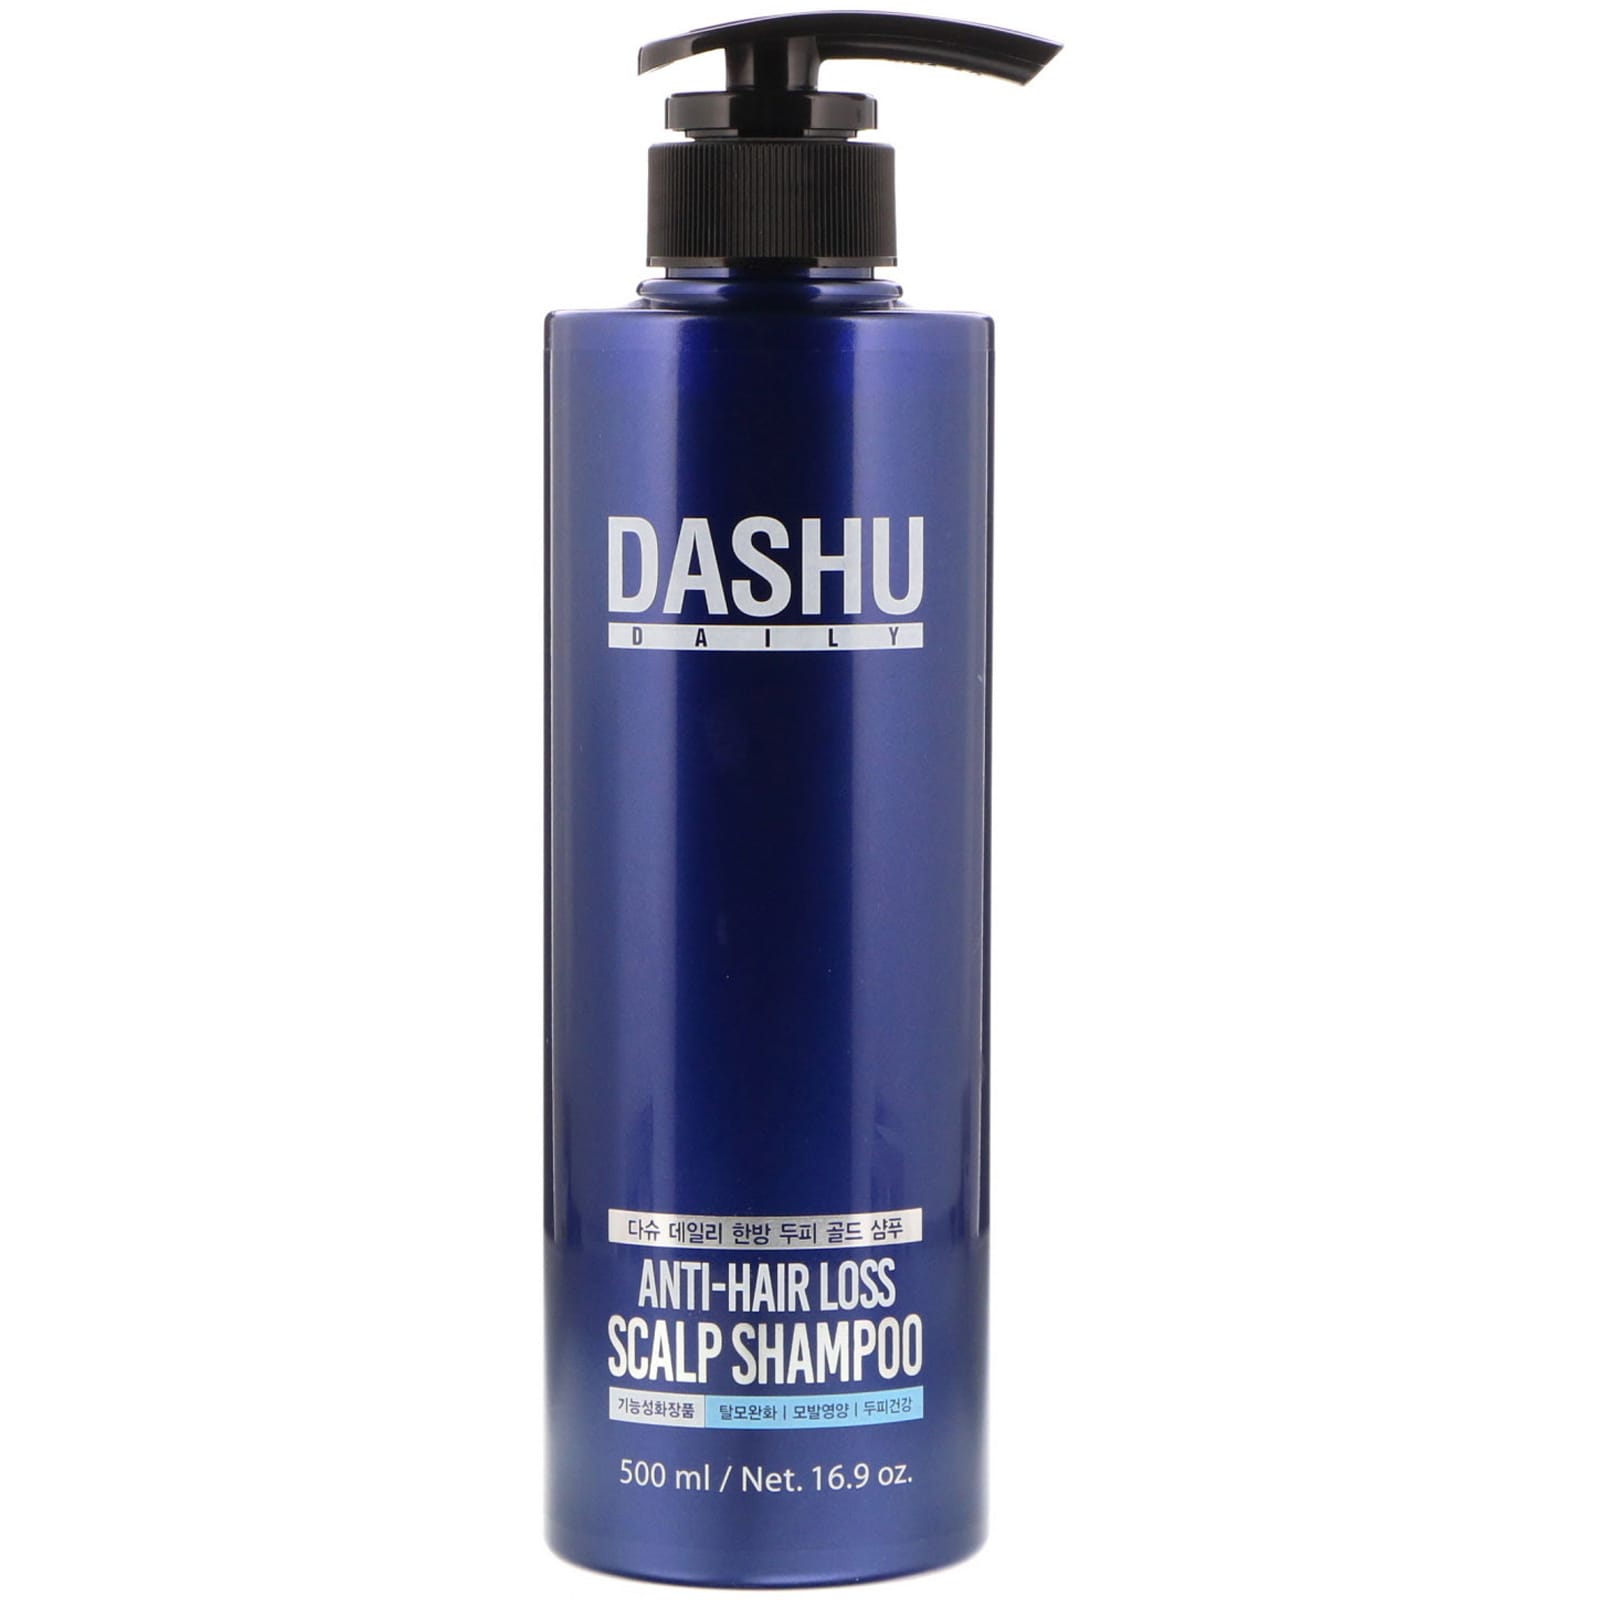 Dashu, Anti-Hair Loss Scalp Shampoo